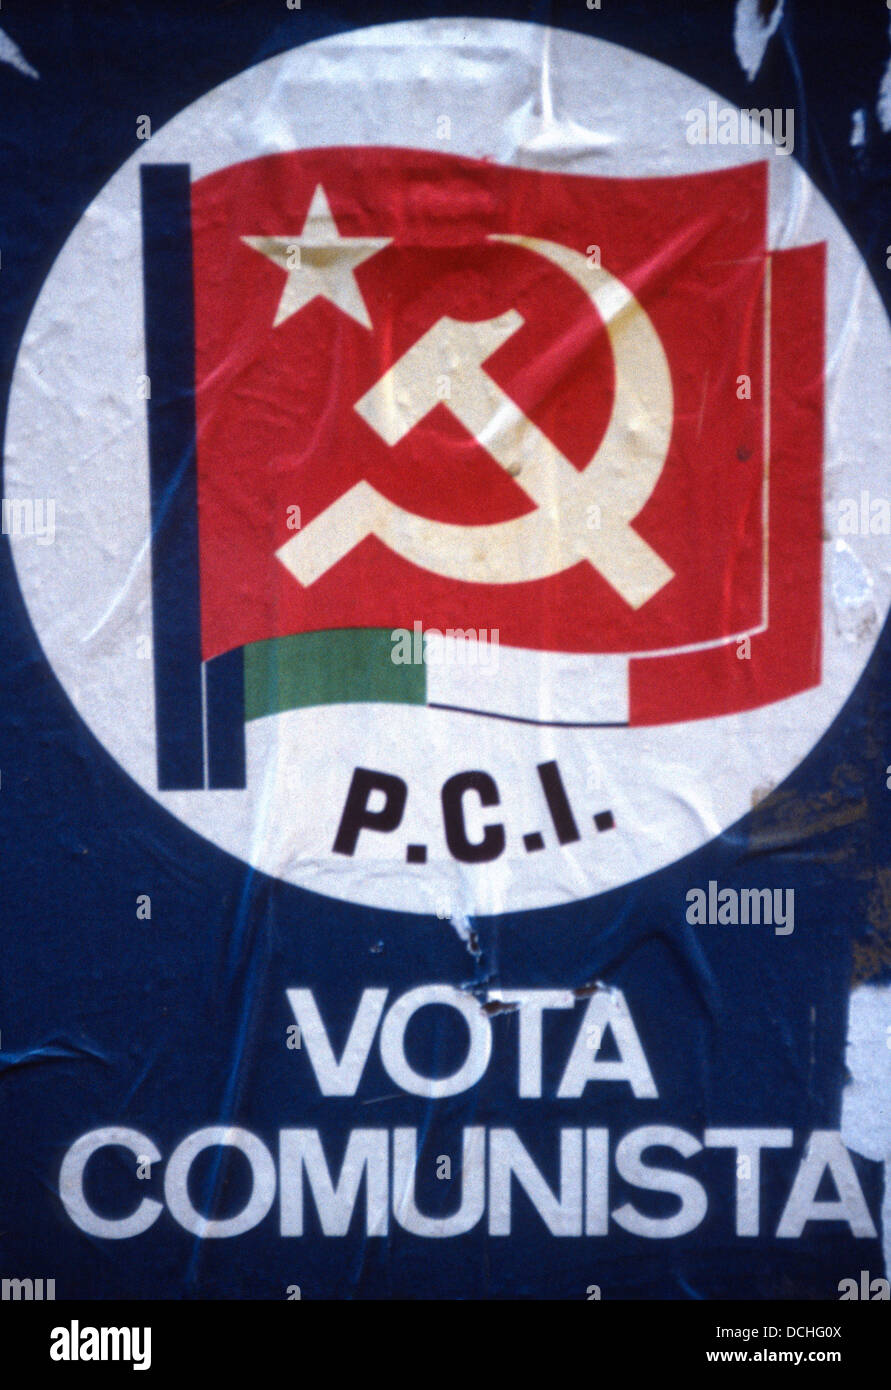 P.C.I. - Partito Comunista vota Communista Italiano - poster sur le mur en Italie, vers 1970 Banque D'Images